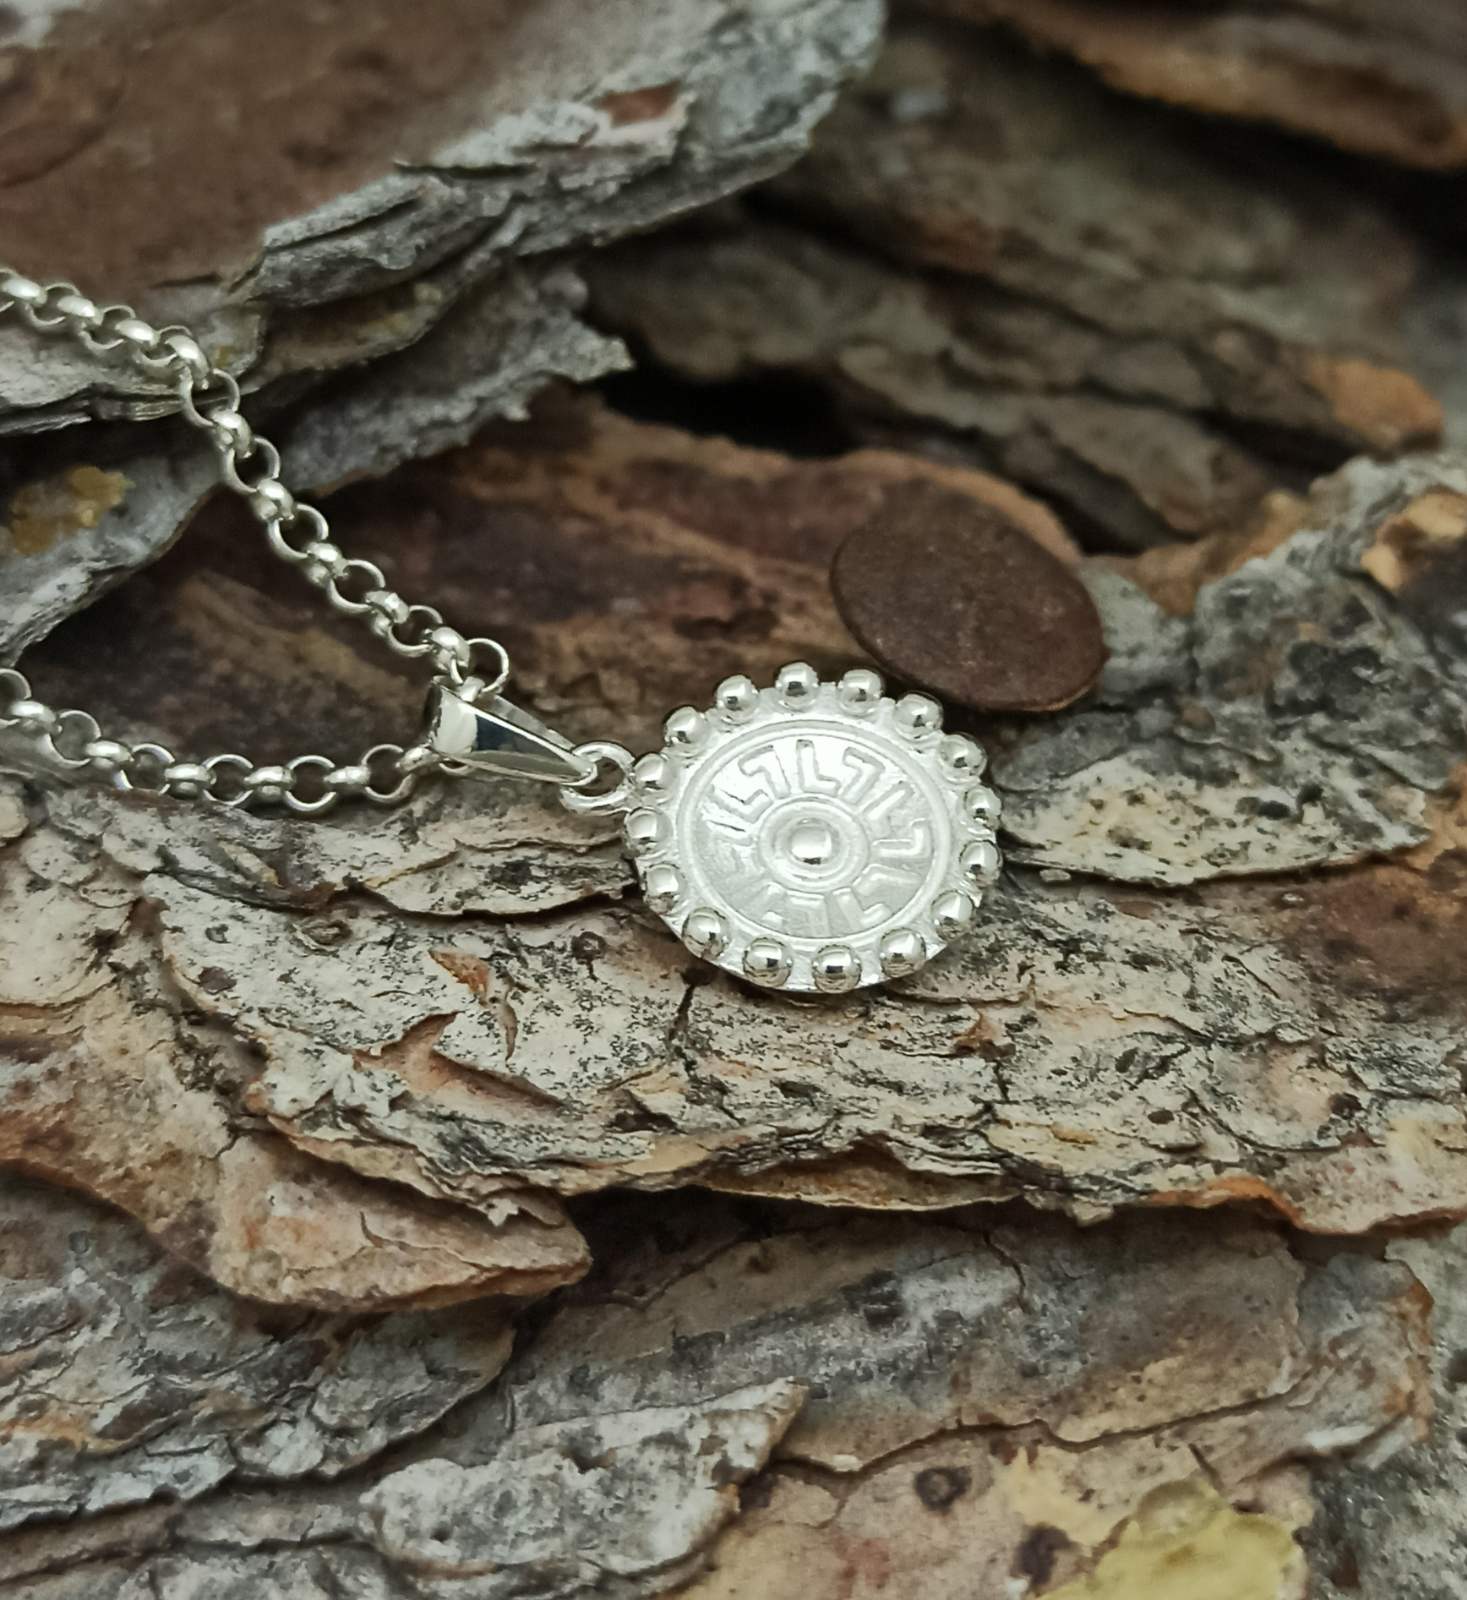 Дамски сребърен медальон с основен елемент вдлъбнат кръг с орнаменти без оксидация на среброто. Модел с каталожен номер 1588M